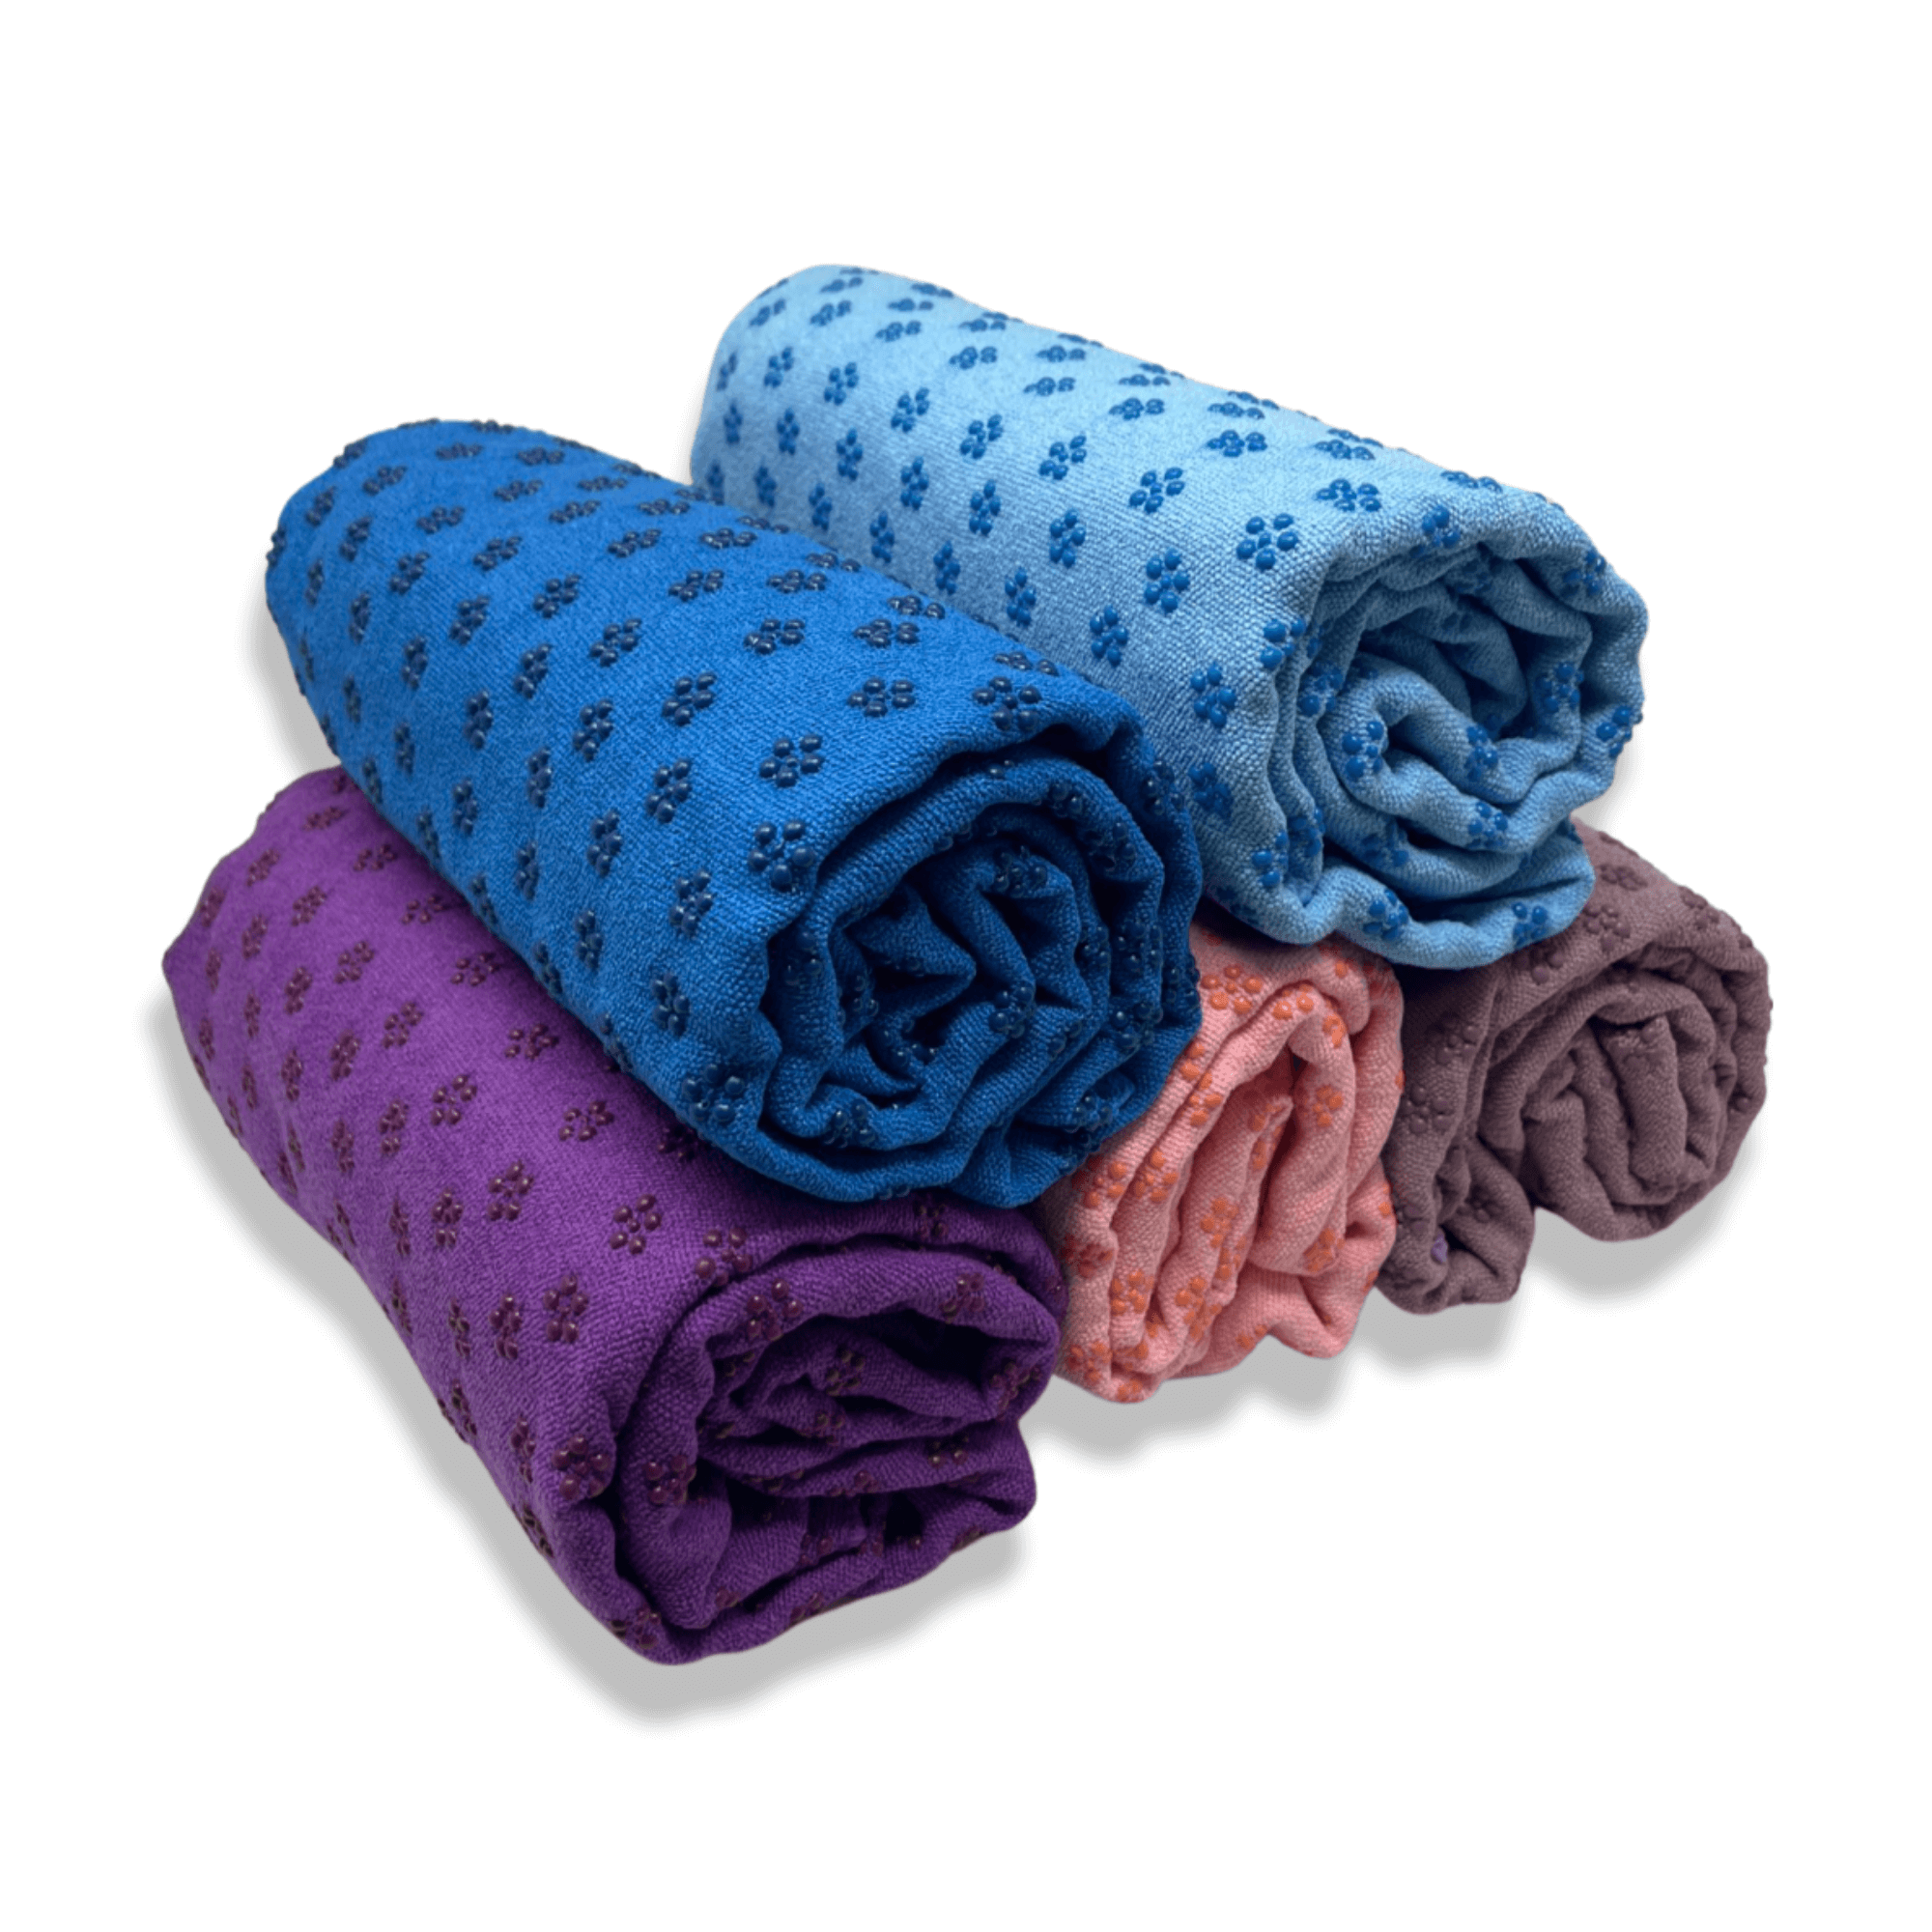 Buy Wholesale Hot Yoga Towels, Non-Slip Yoga Towels in Bulk